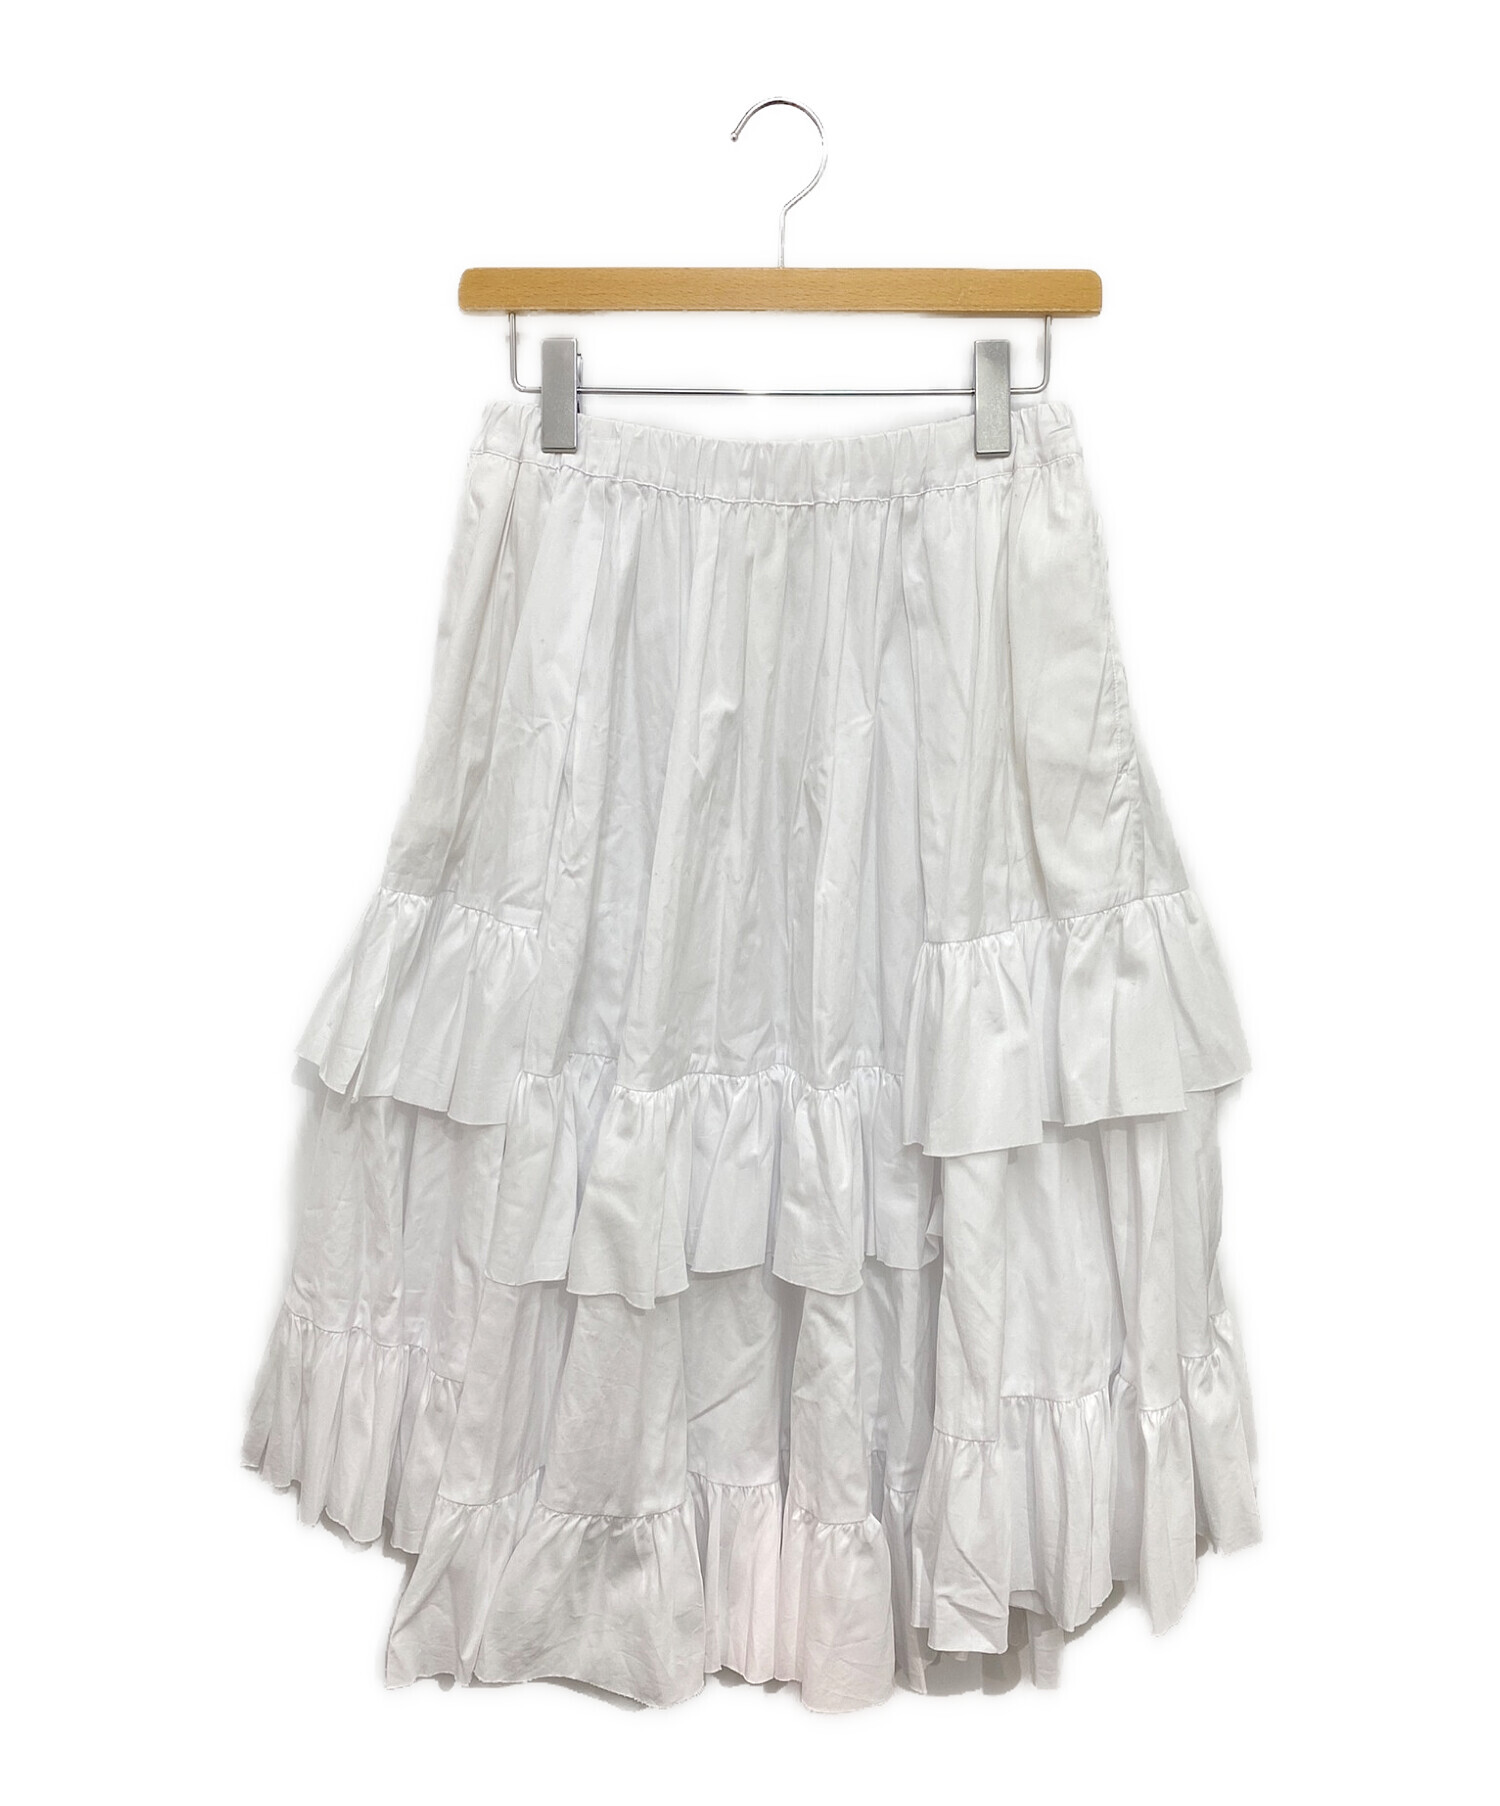 スカート丈76cm2021SS COMME des GARCONS スカート